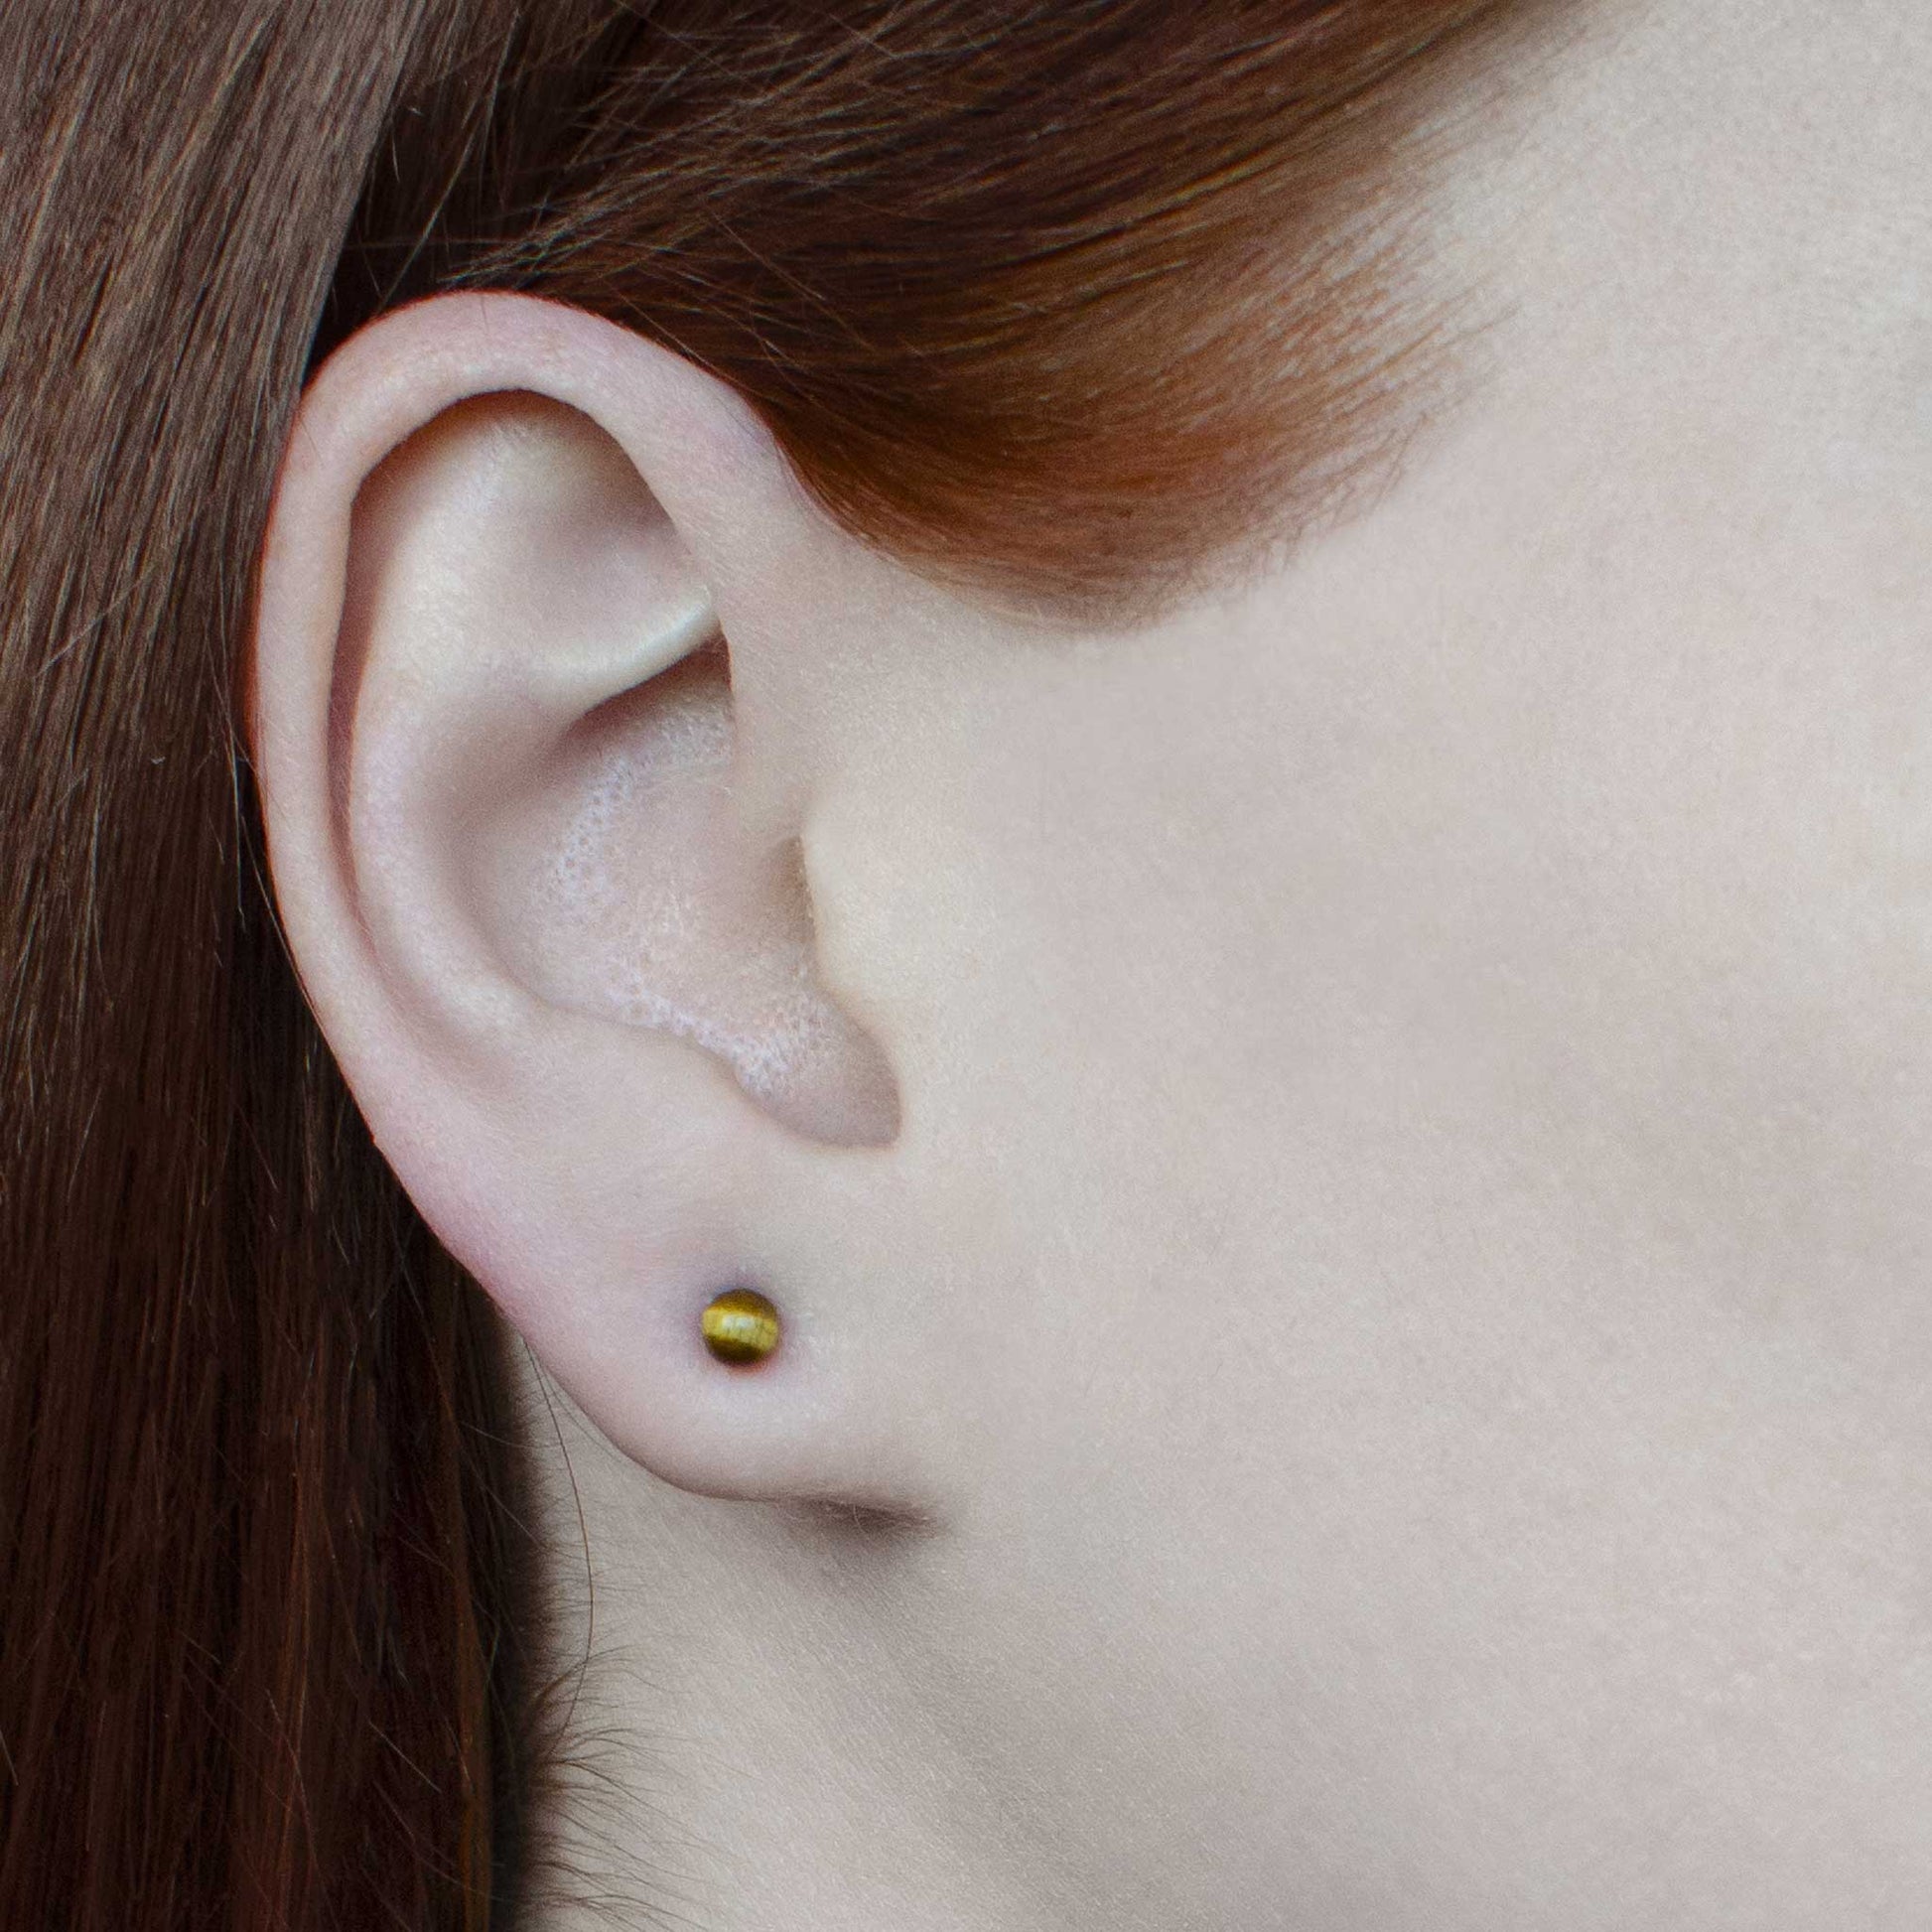 Woman wearing small tigers eye stud earring in earlobe